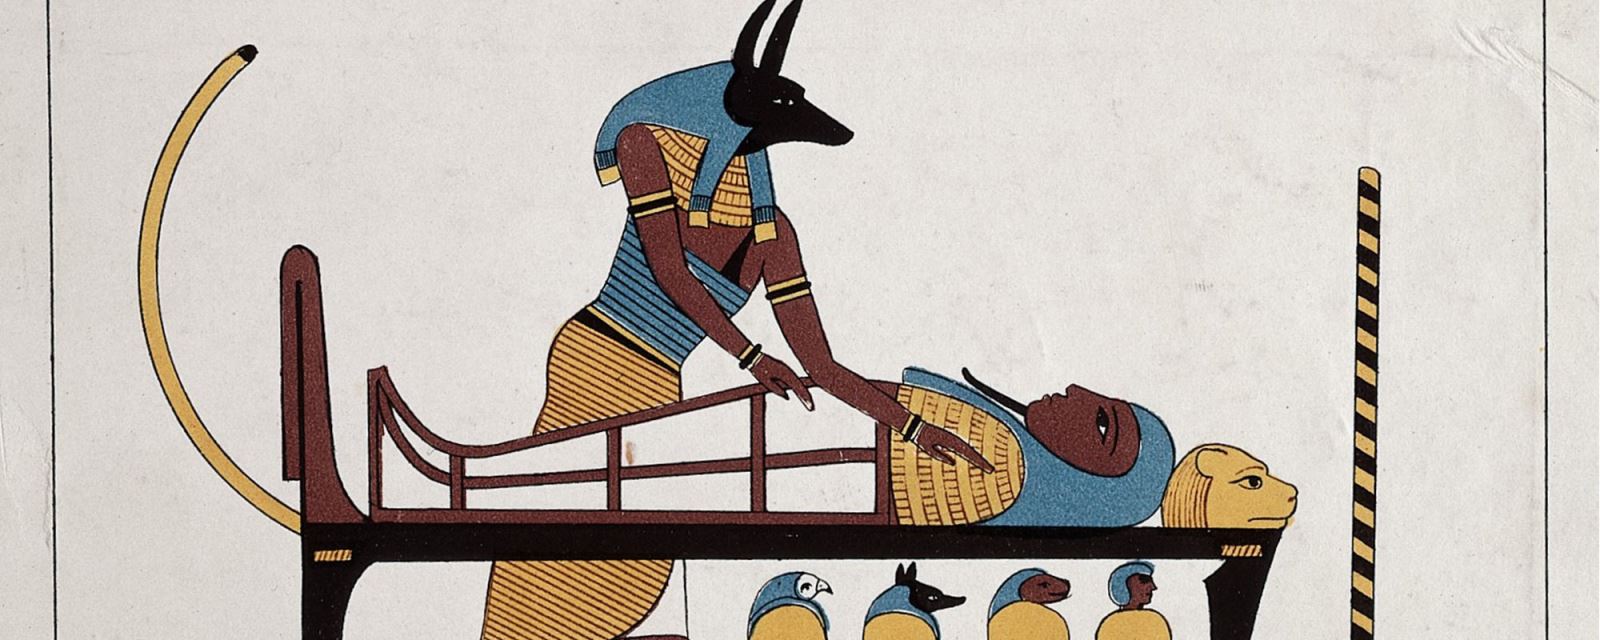 Anubis -Vị thần chết Ai Cập được tôn vinh bởi 8 triệu con chó ướp xác |  